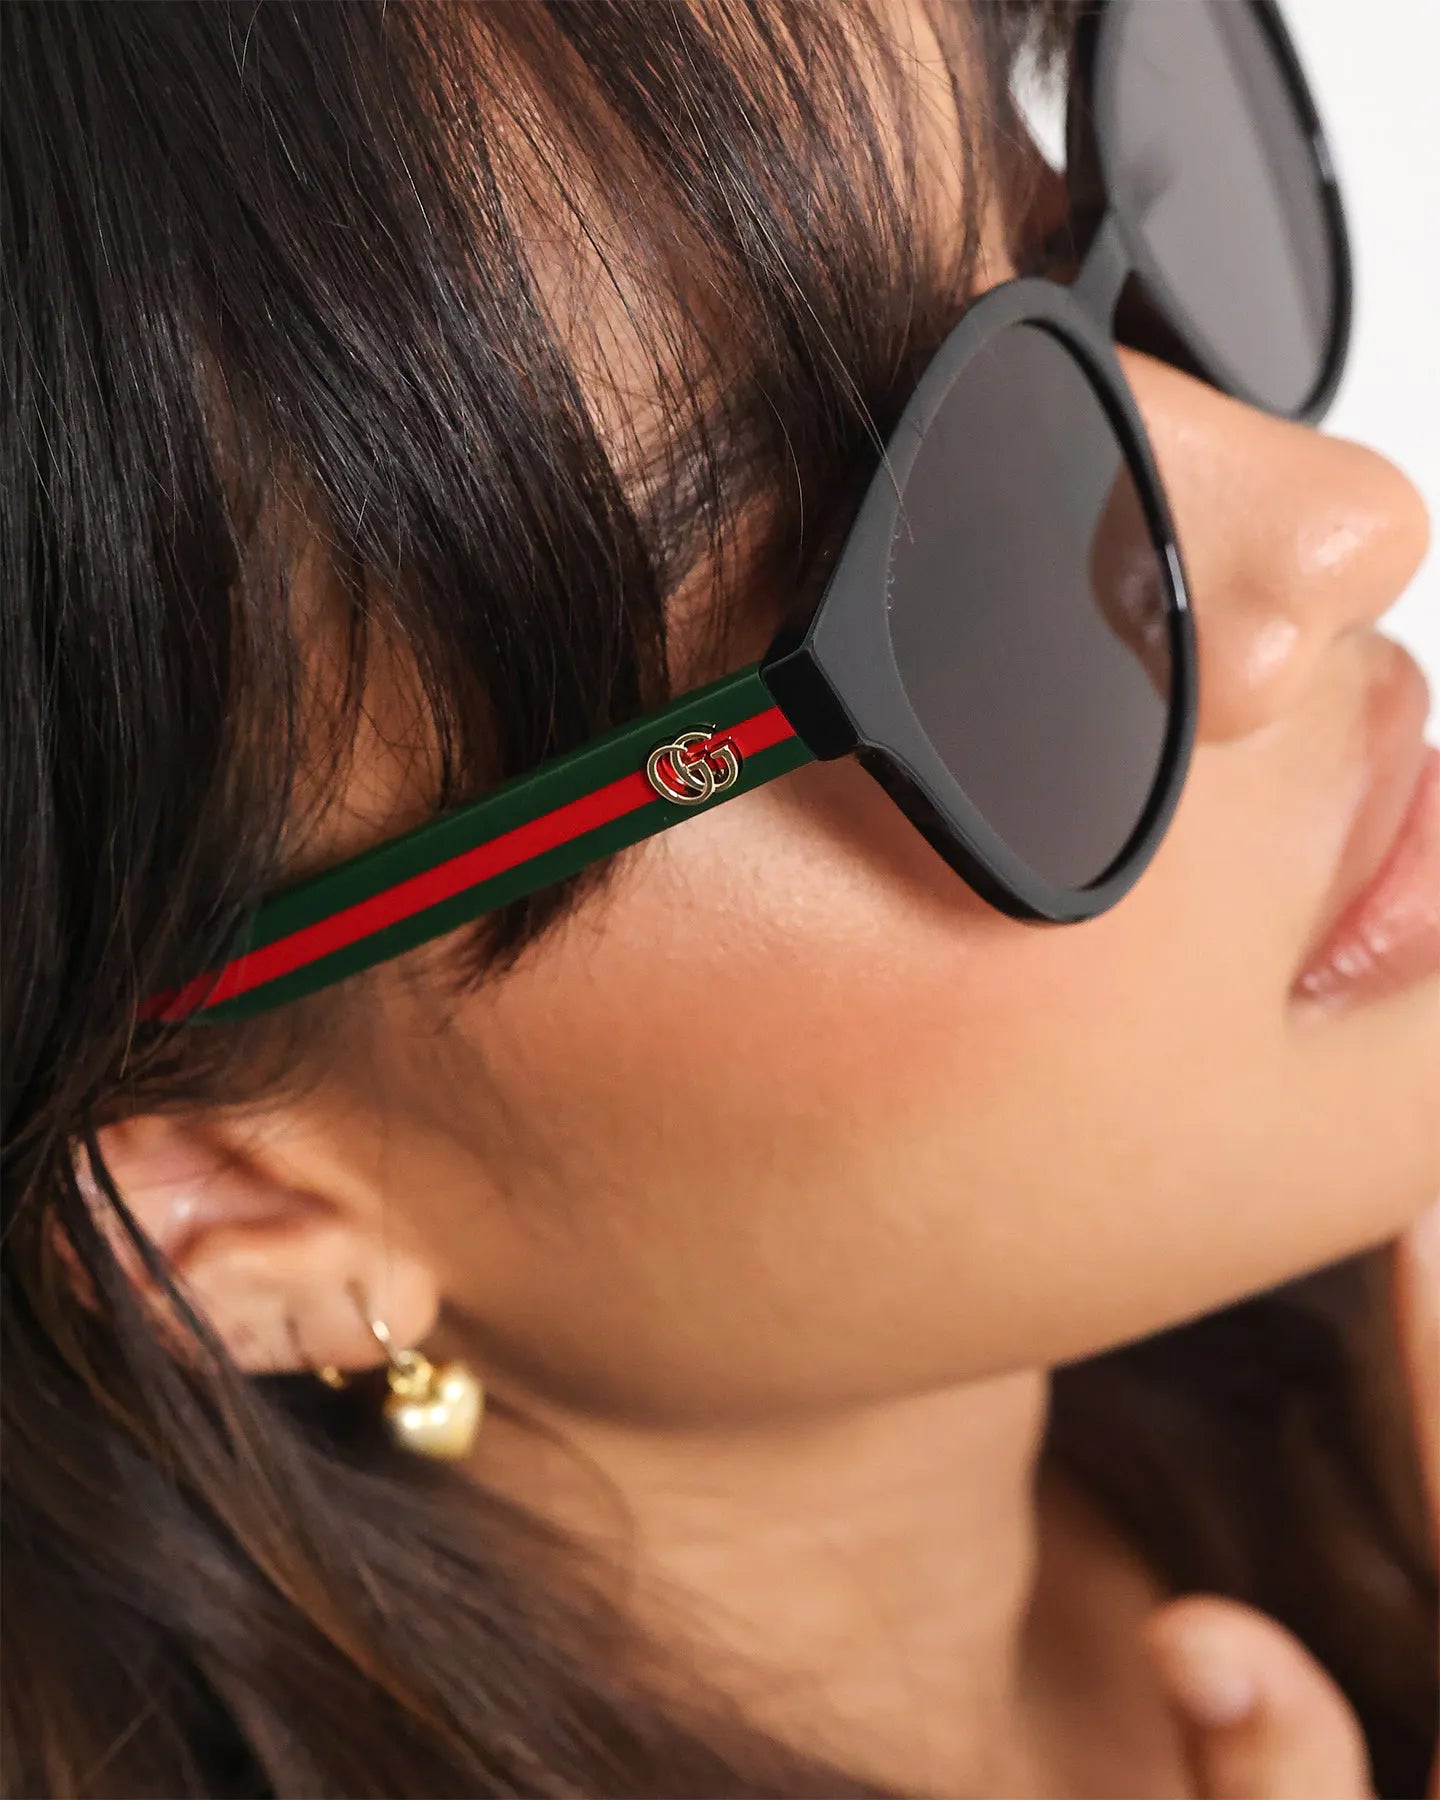 Gucci Round Frame Sunglasses GG0855SK 001 Black